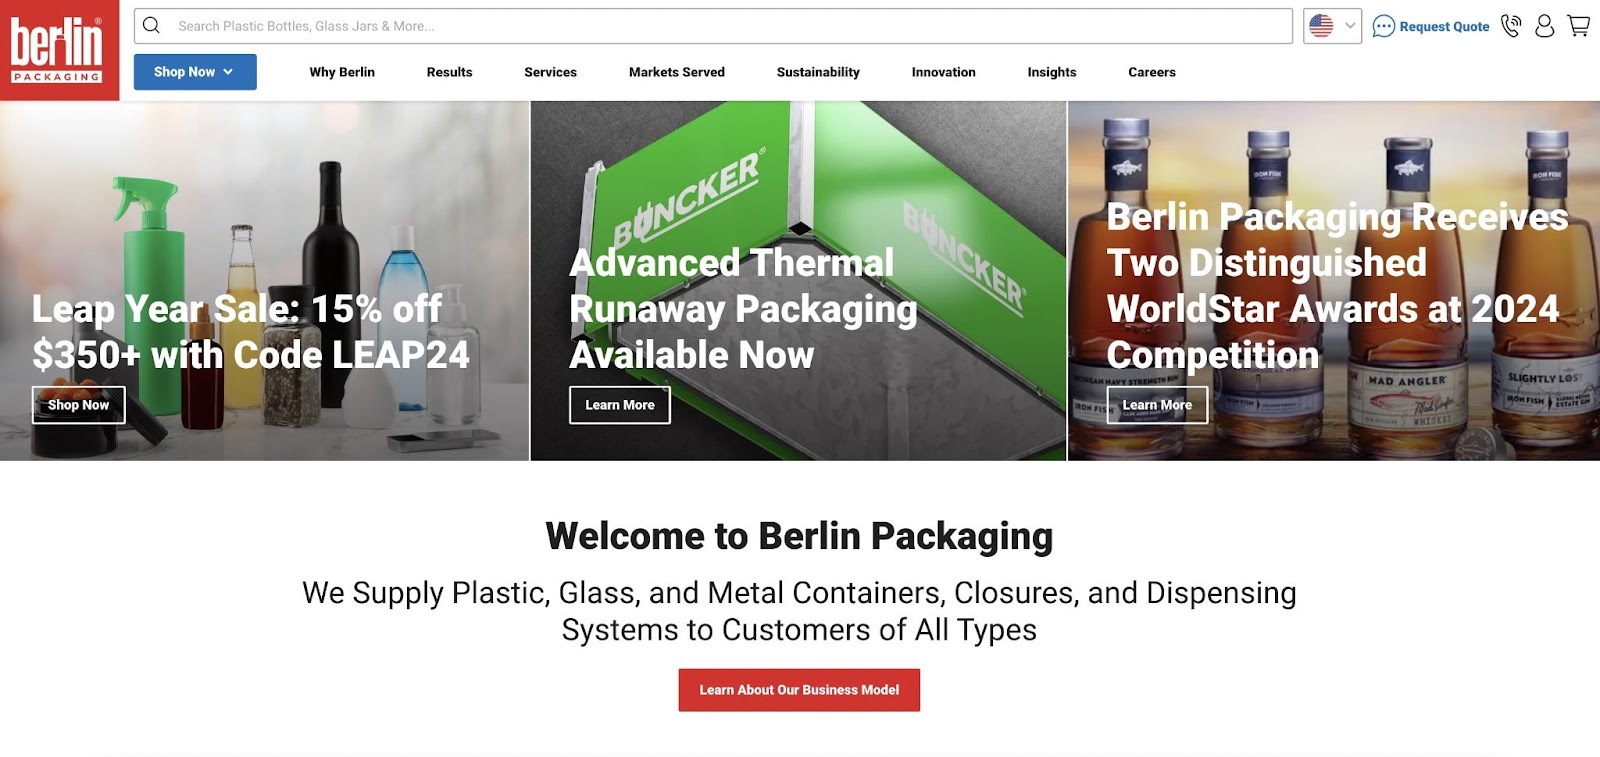 The Berlin Packaging homepage